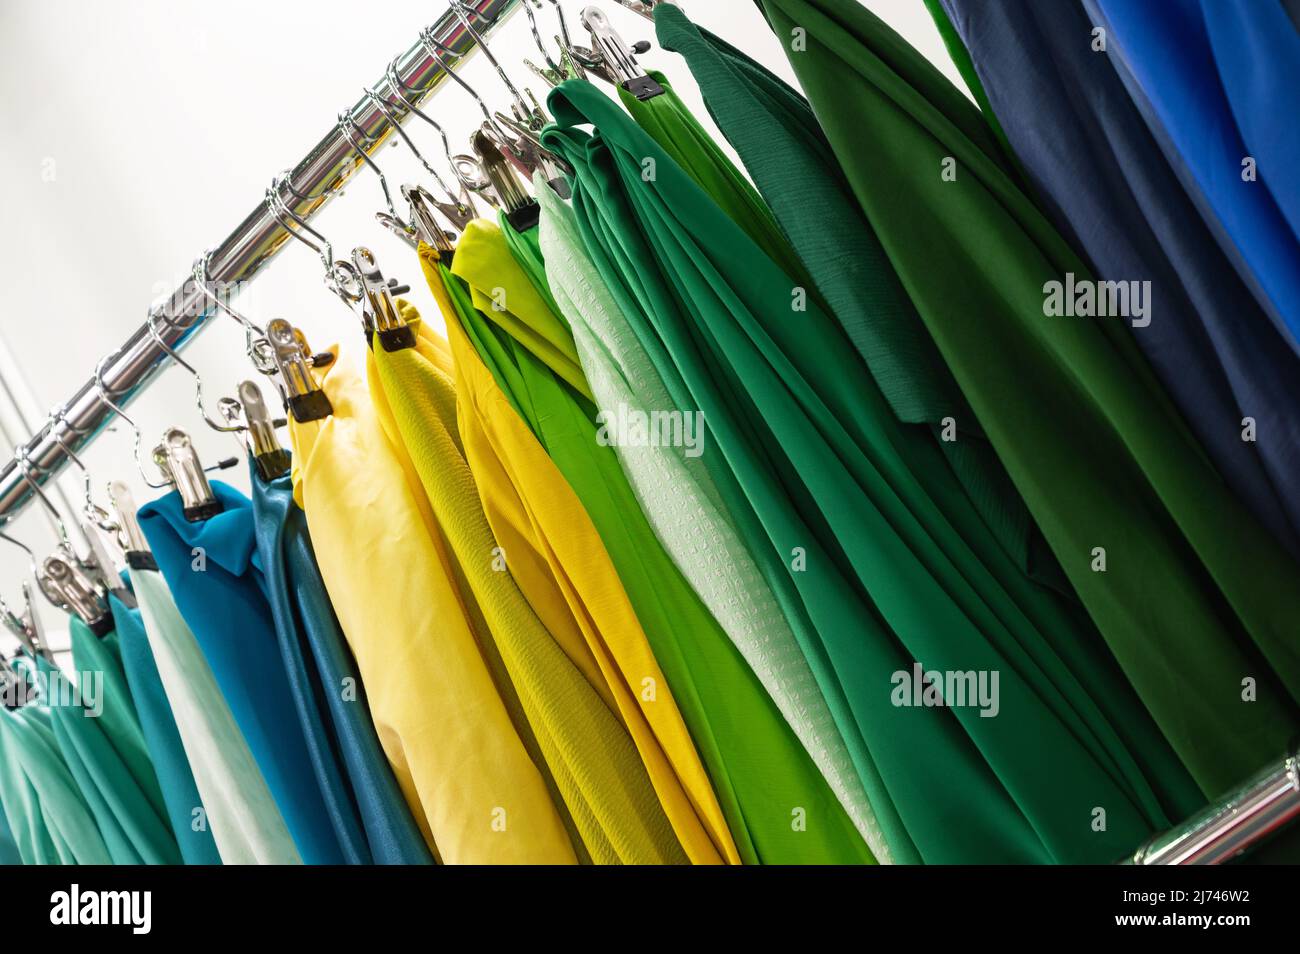 An der Theke hängen Muster von grün-gelben und blauen Stoffen Stockfoto